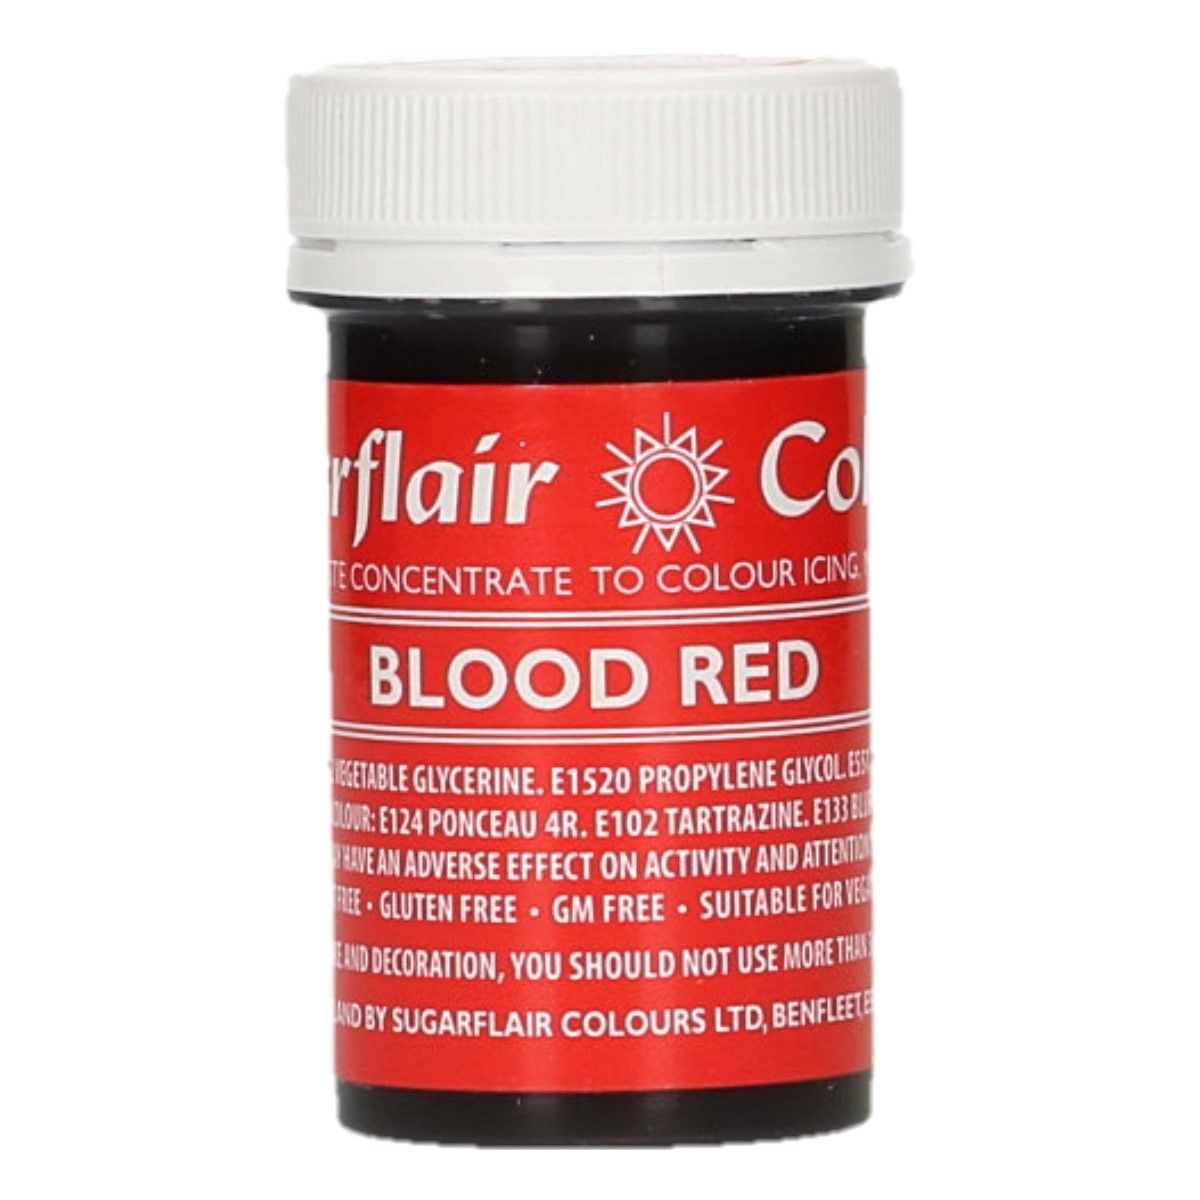 E-shop Sugarflair Colours Gélová farba Blood Red - Červená 25 g